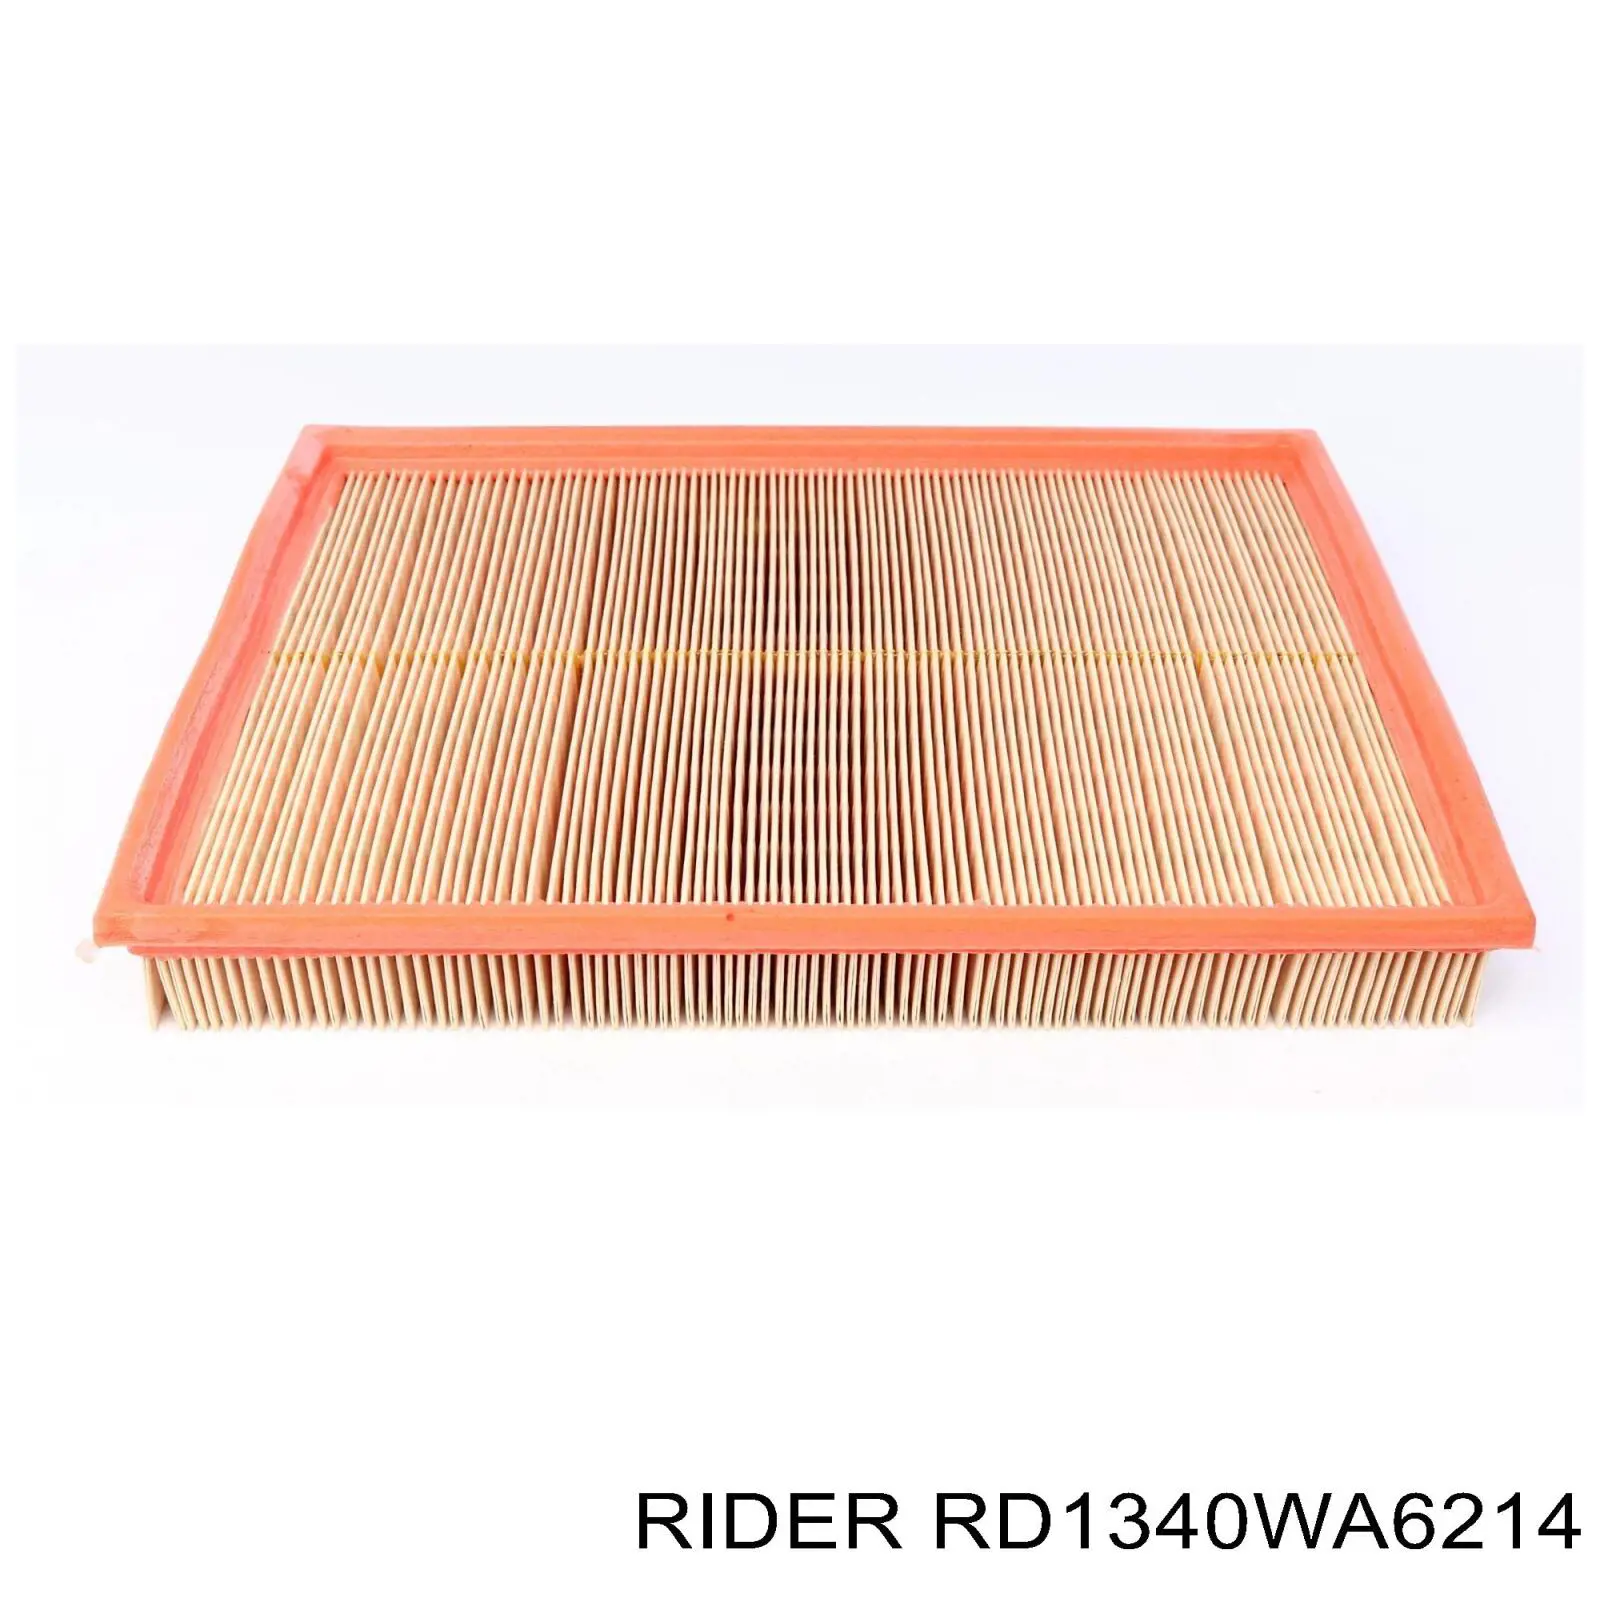 RD1340WA6214 Rider filtro de aire